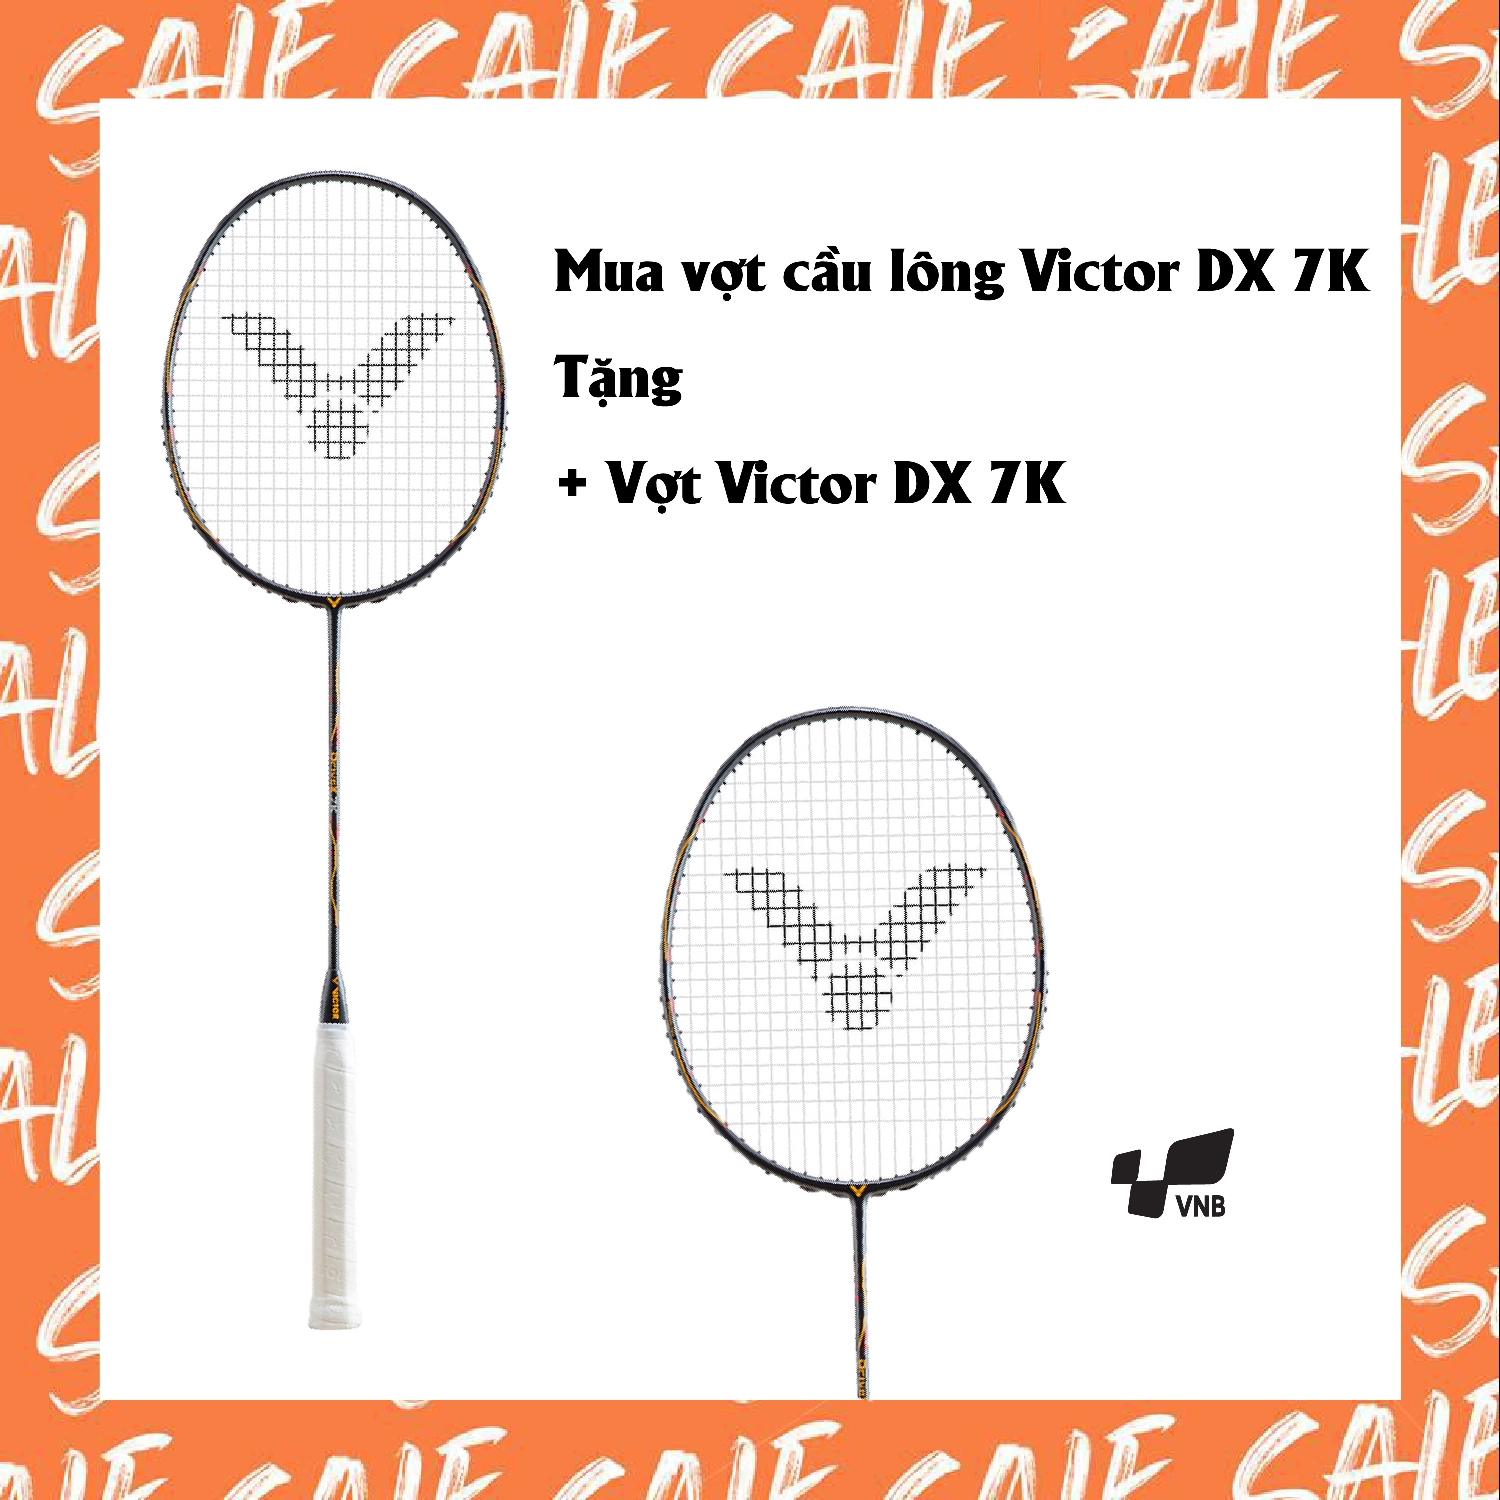 Combo mua vợt cầu lông Victor DX-7K tặng vợt Victor DX-7K | ShopVNB